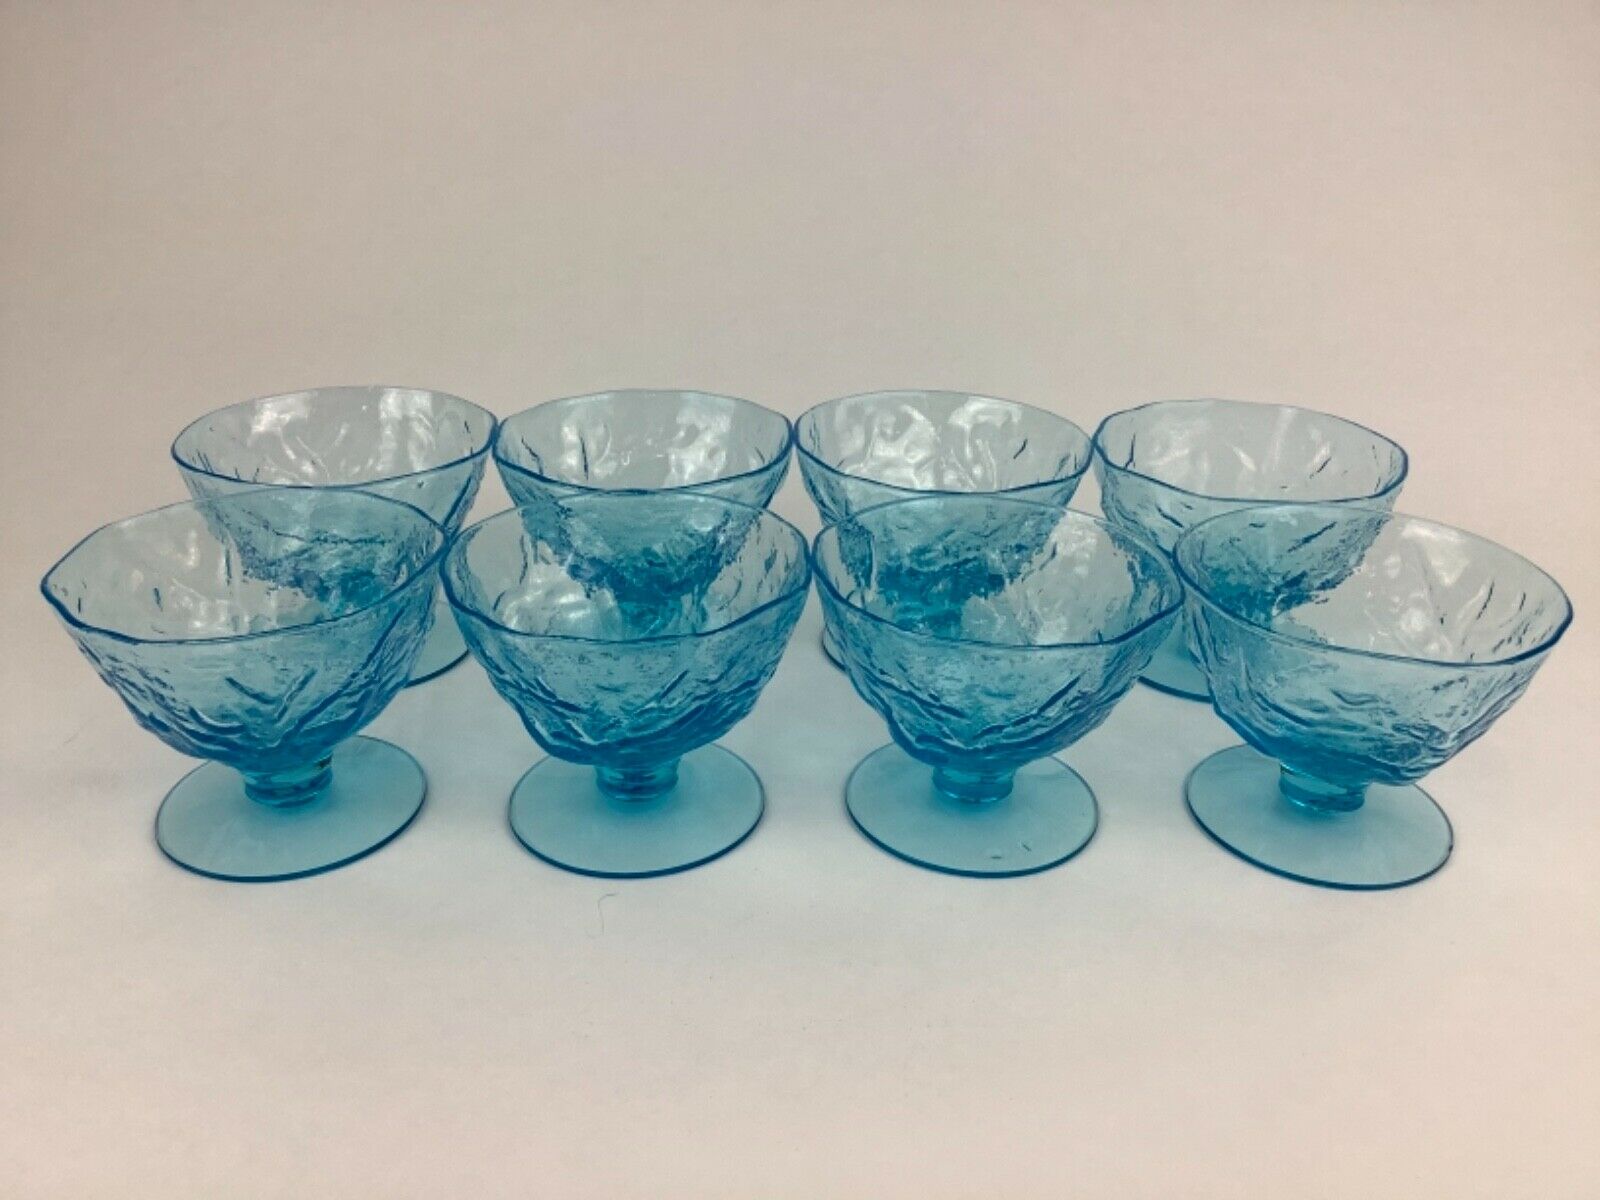 Morgantown Seneca Driftwood Peacock Blue Crinkle Glass Set Of 8 Sherbet Glasses